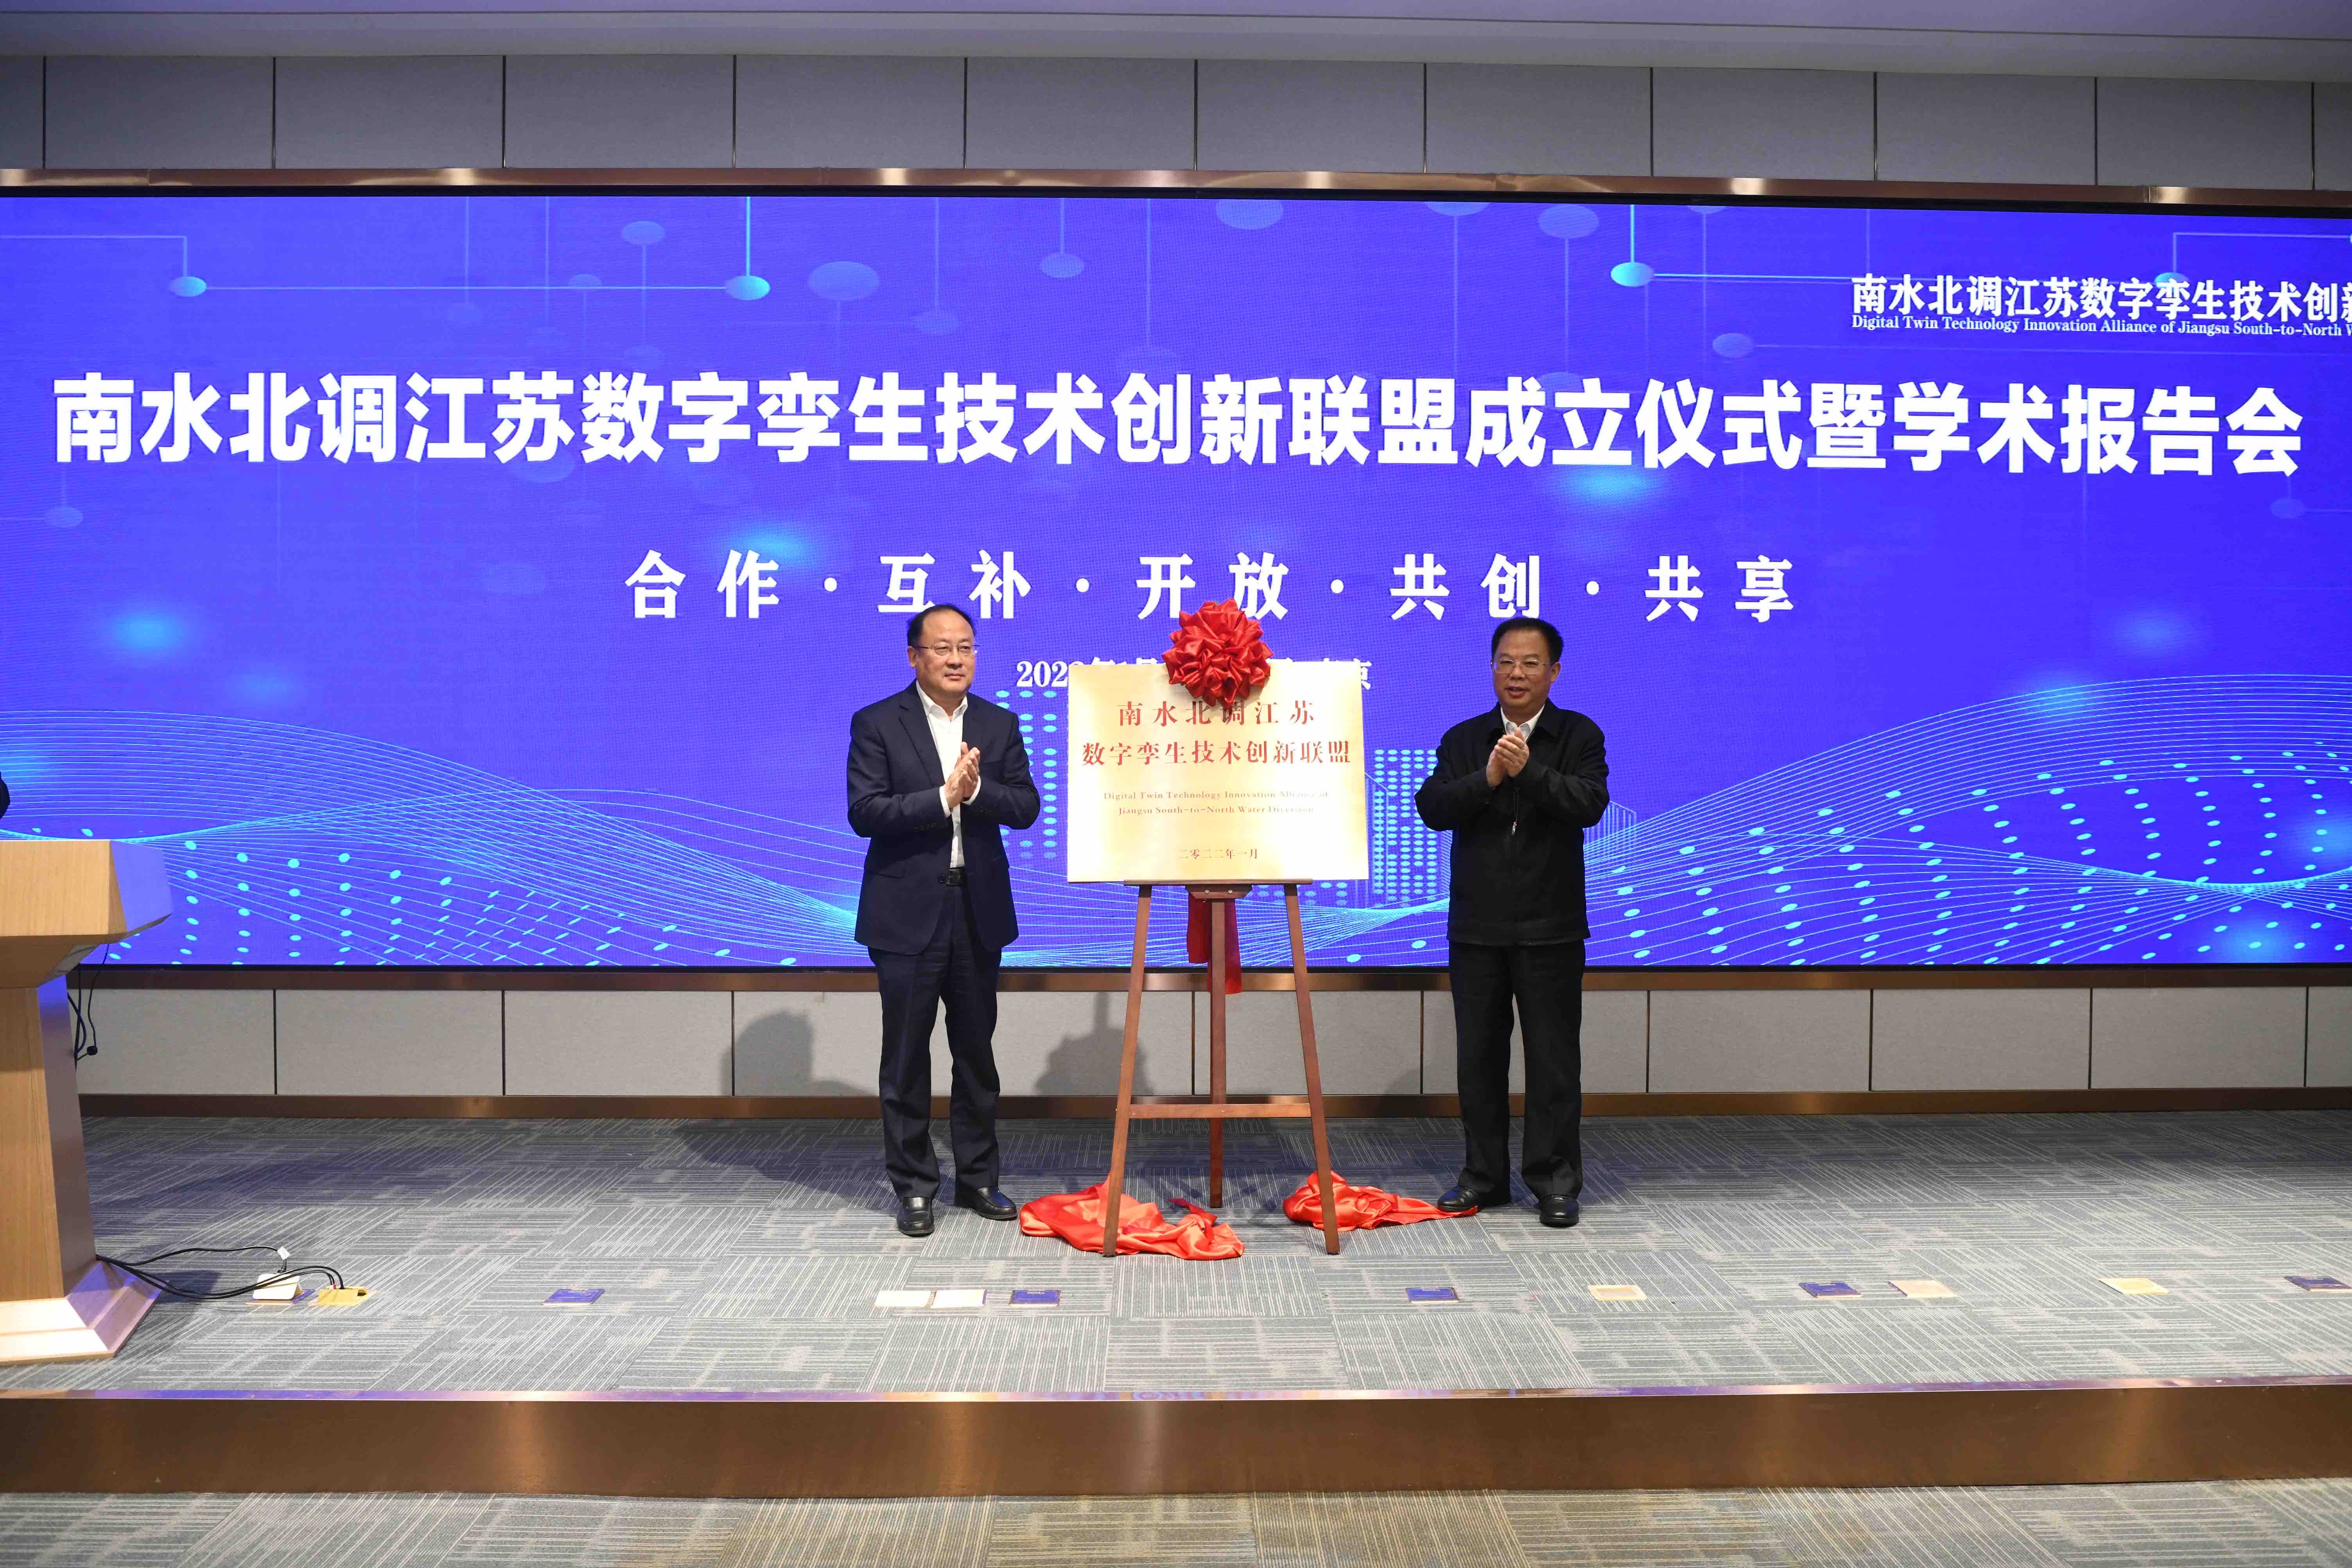 40、2022年1月24日，南水北调江苏数字孪生技术创新联盟在南水北调江苏水源公司揭牌成立。(1).jpg